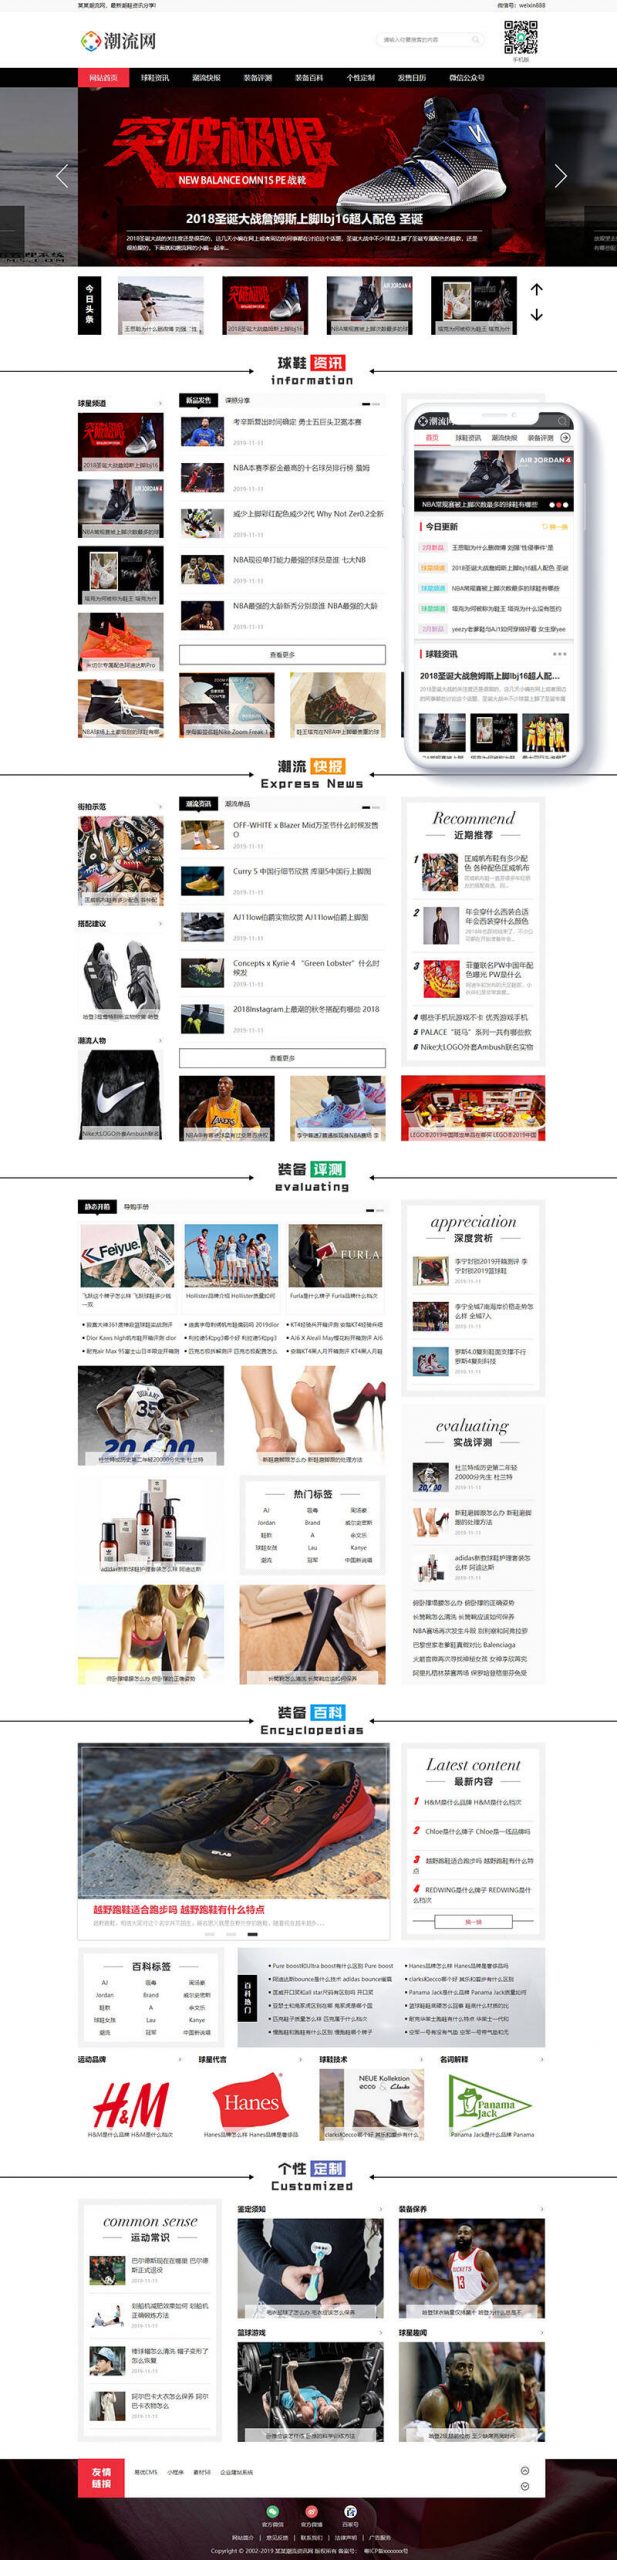 M547 潮牌鞋潮流资讯类网站织梦模板(带手机端)